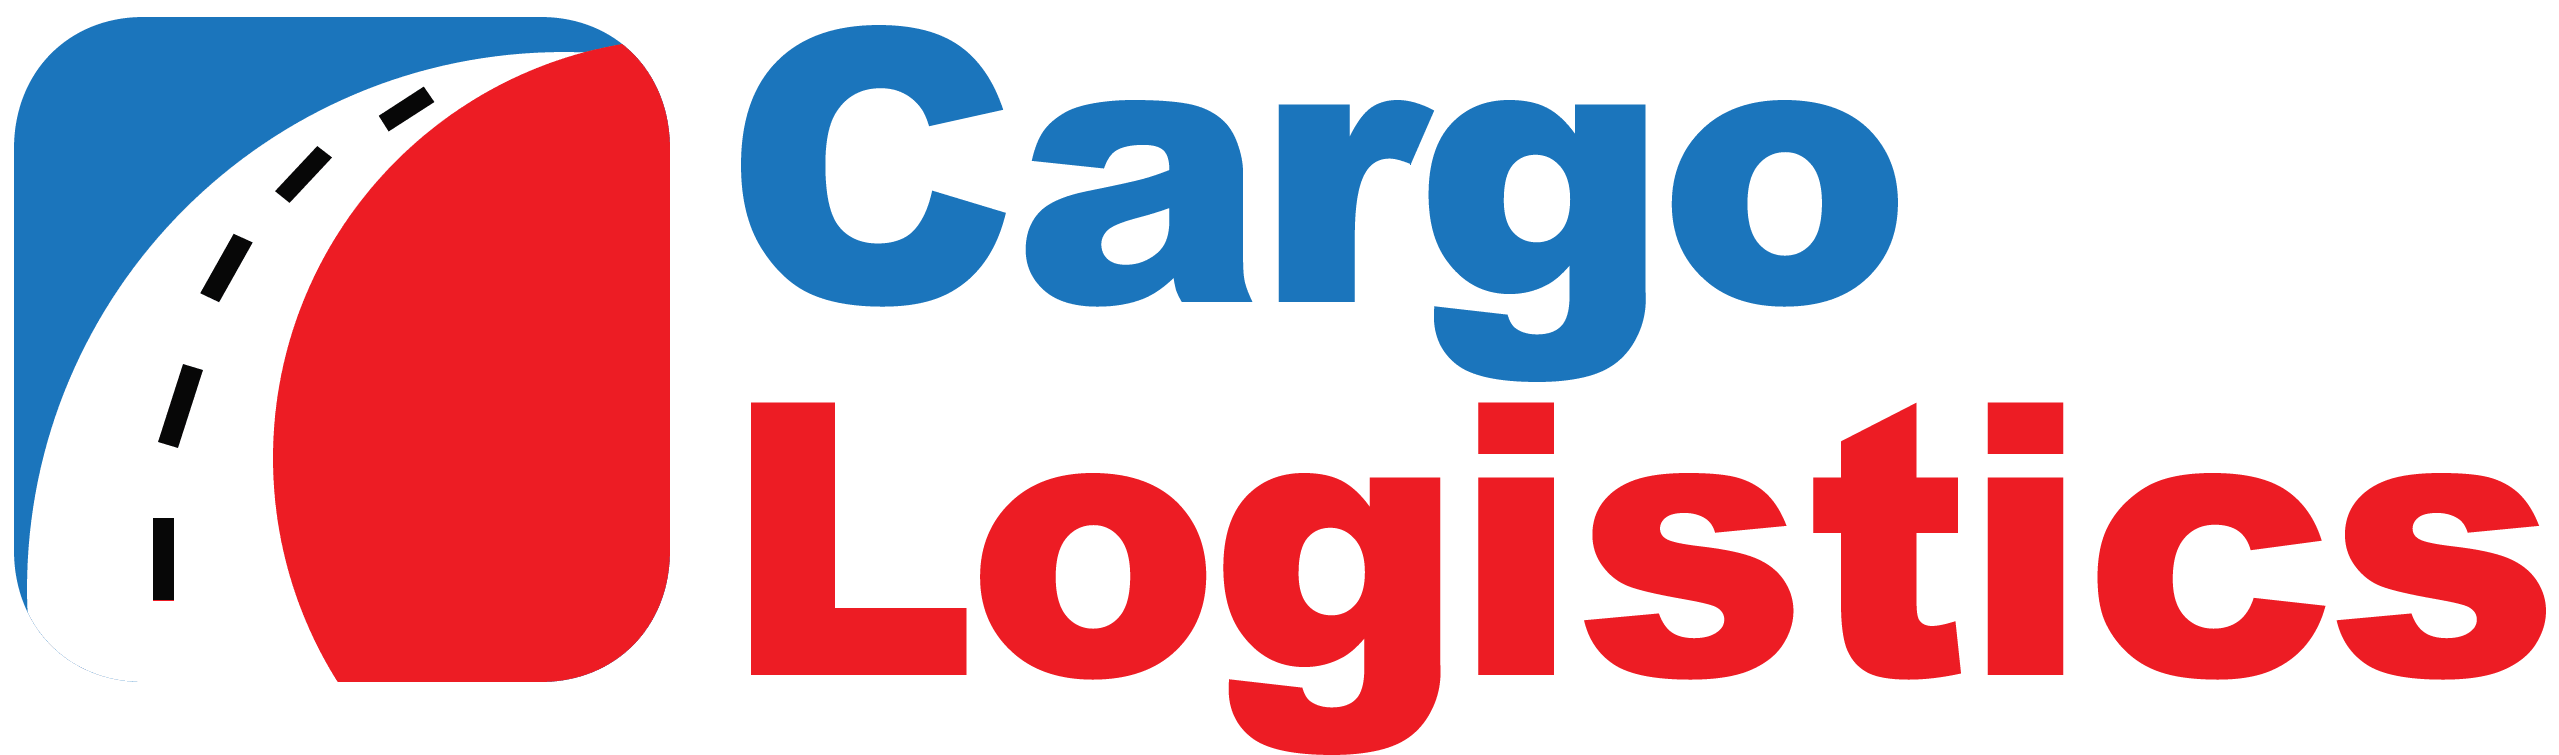 Cargo Logistics logo